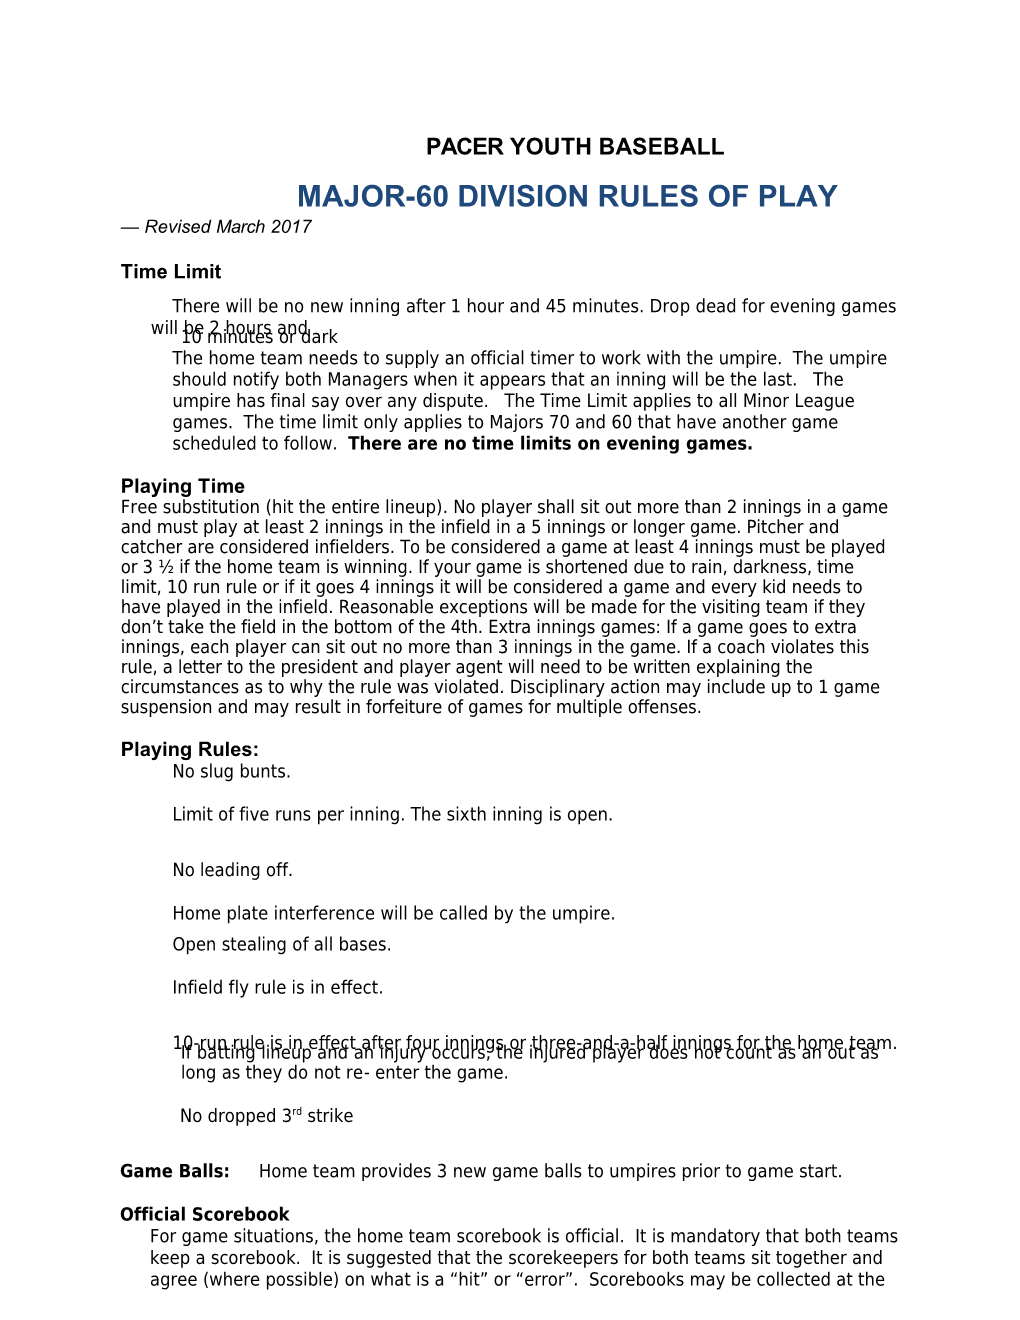 Major-60Division Rulesofplay